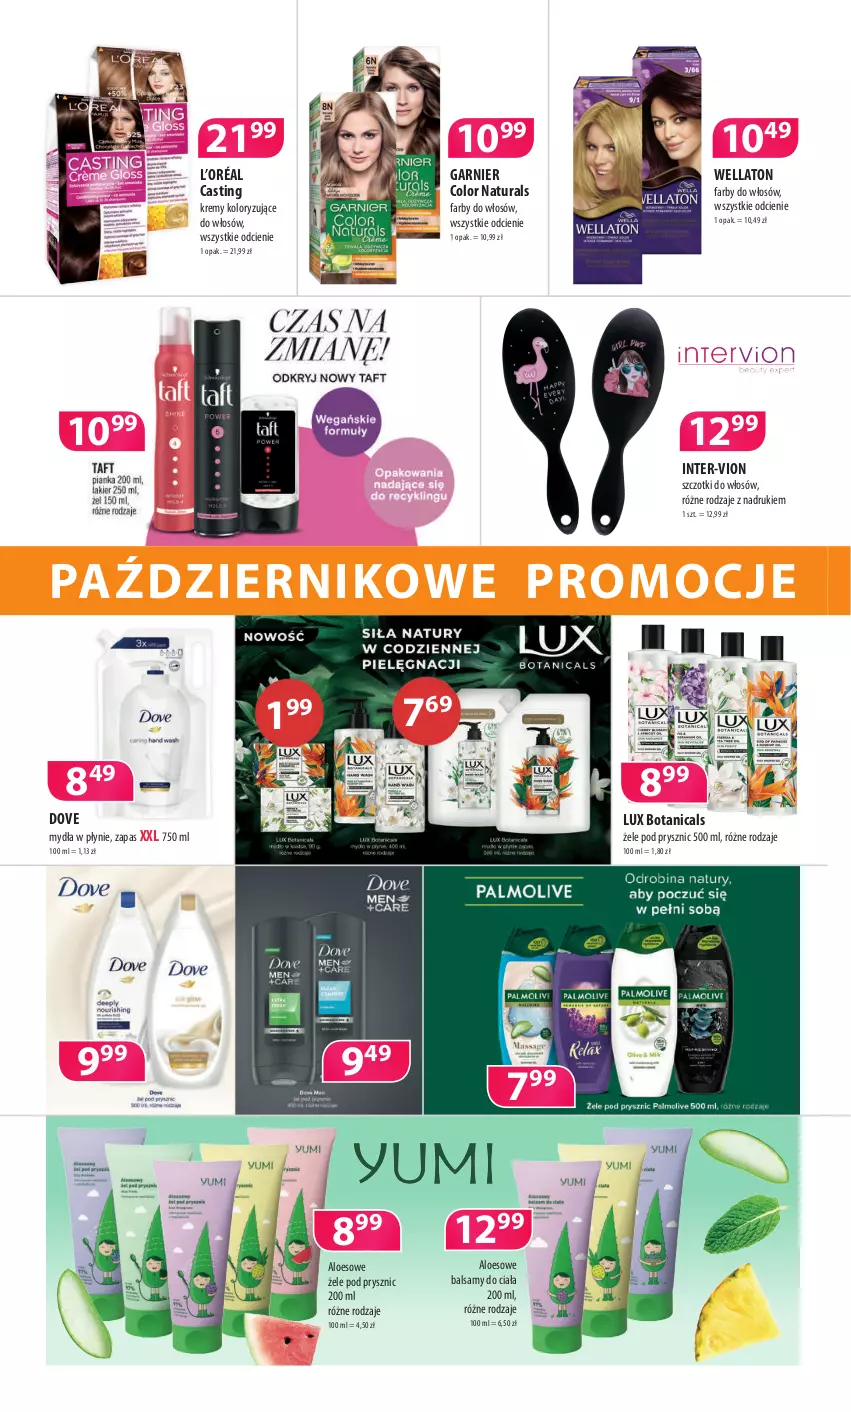 Gazetka promocyjna Drogerie Polskie - Gazetka - ważna 08.10 do 31.10.2021 - strona 4 - produkty: Dove, Fa, Garnier, L’Oréal, Wella